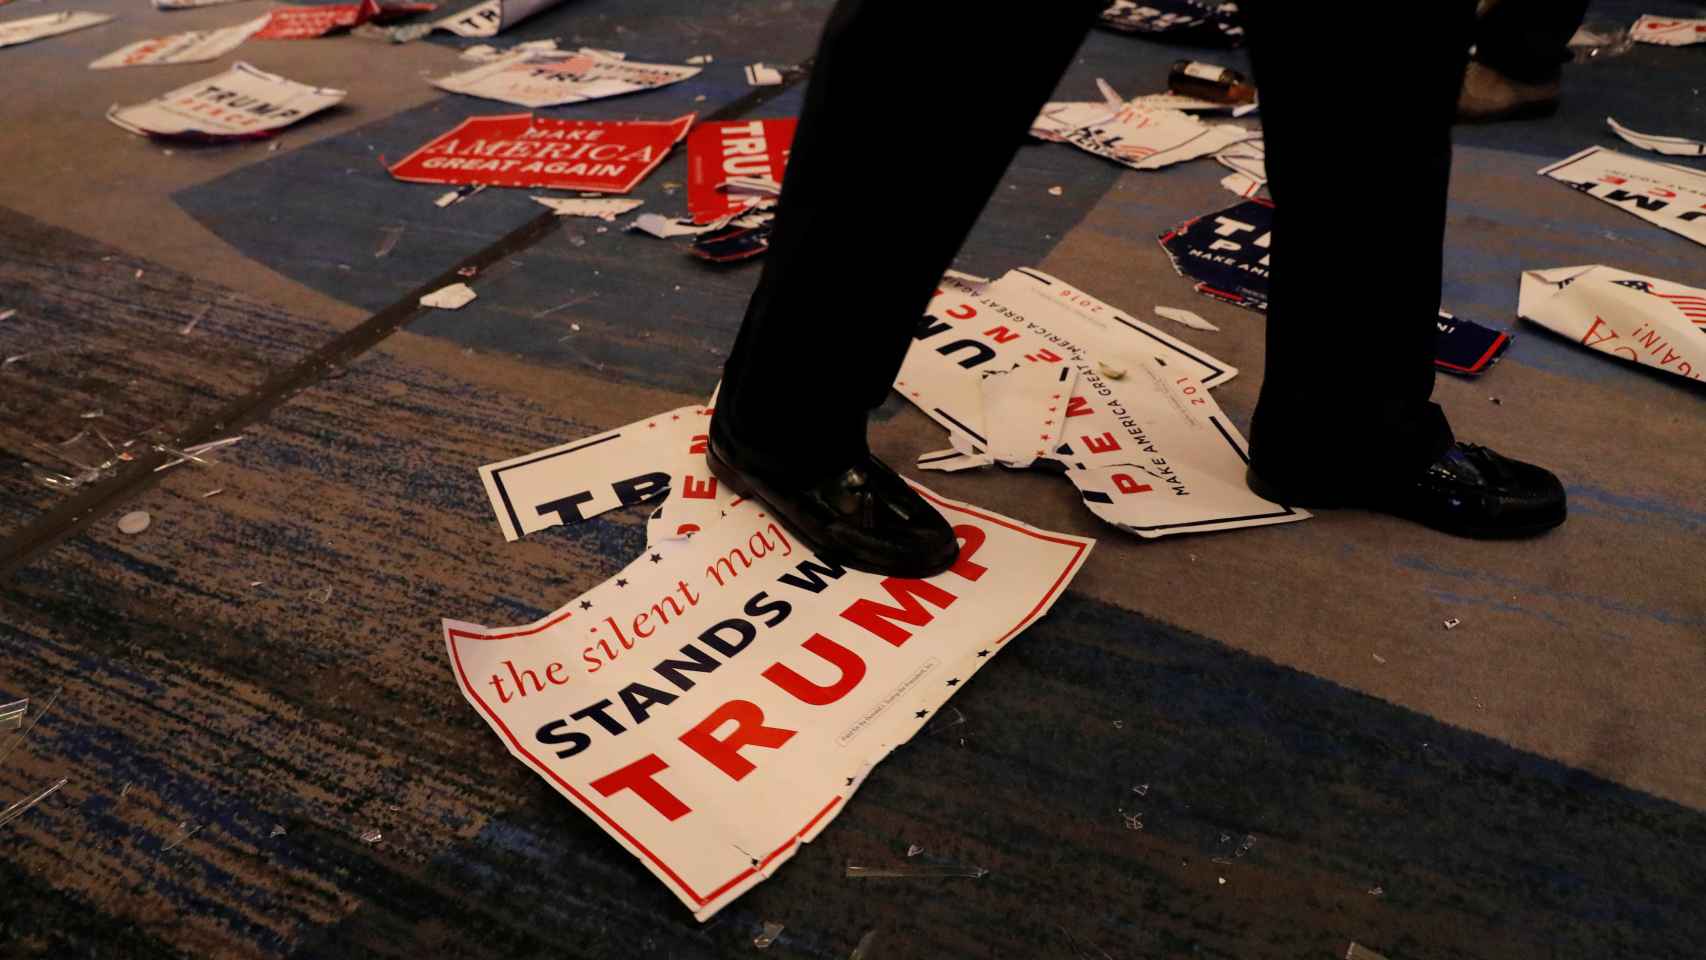 Restos de la fiesta electoral tras la victoria de Trump en un hotel de Nueva York